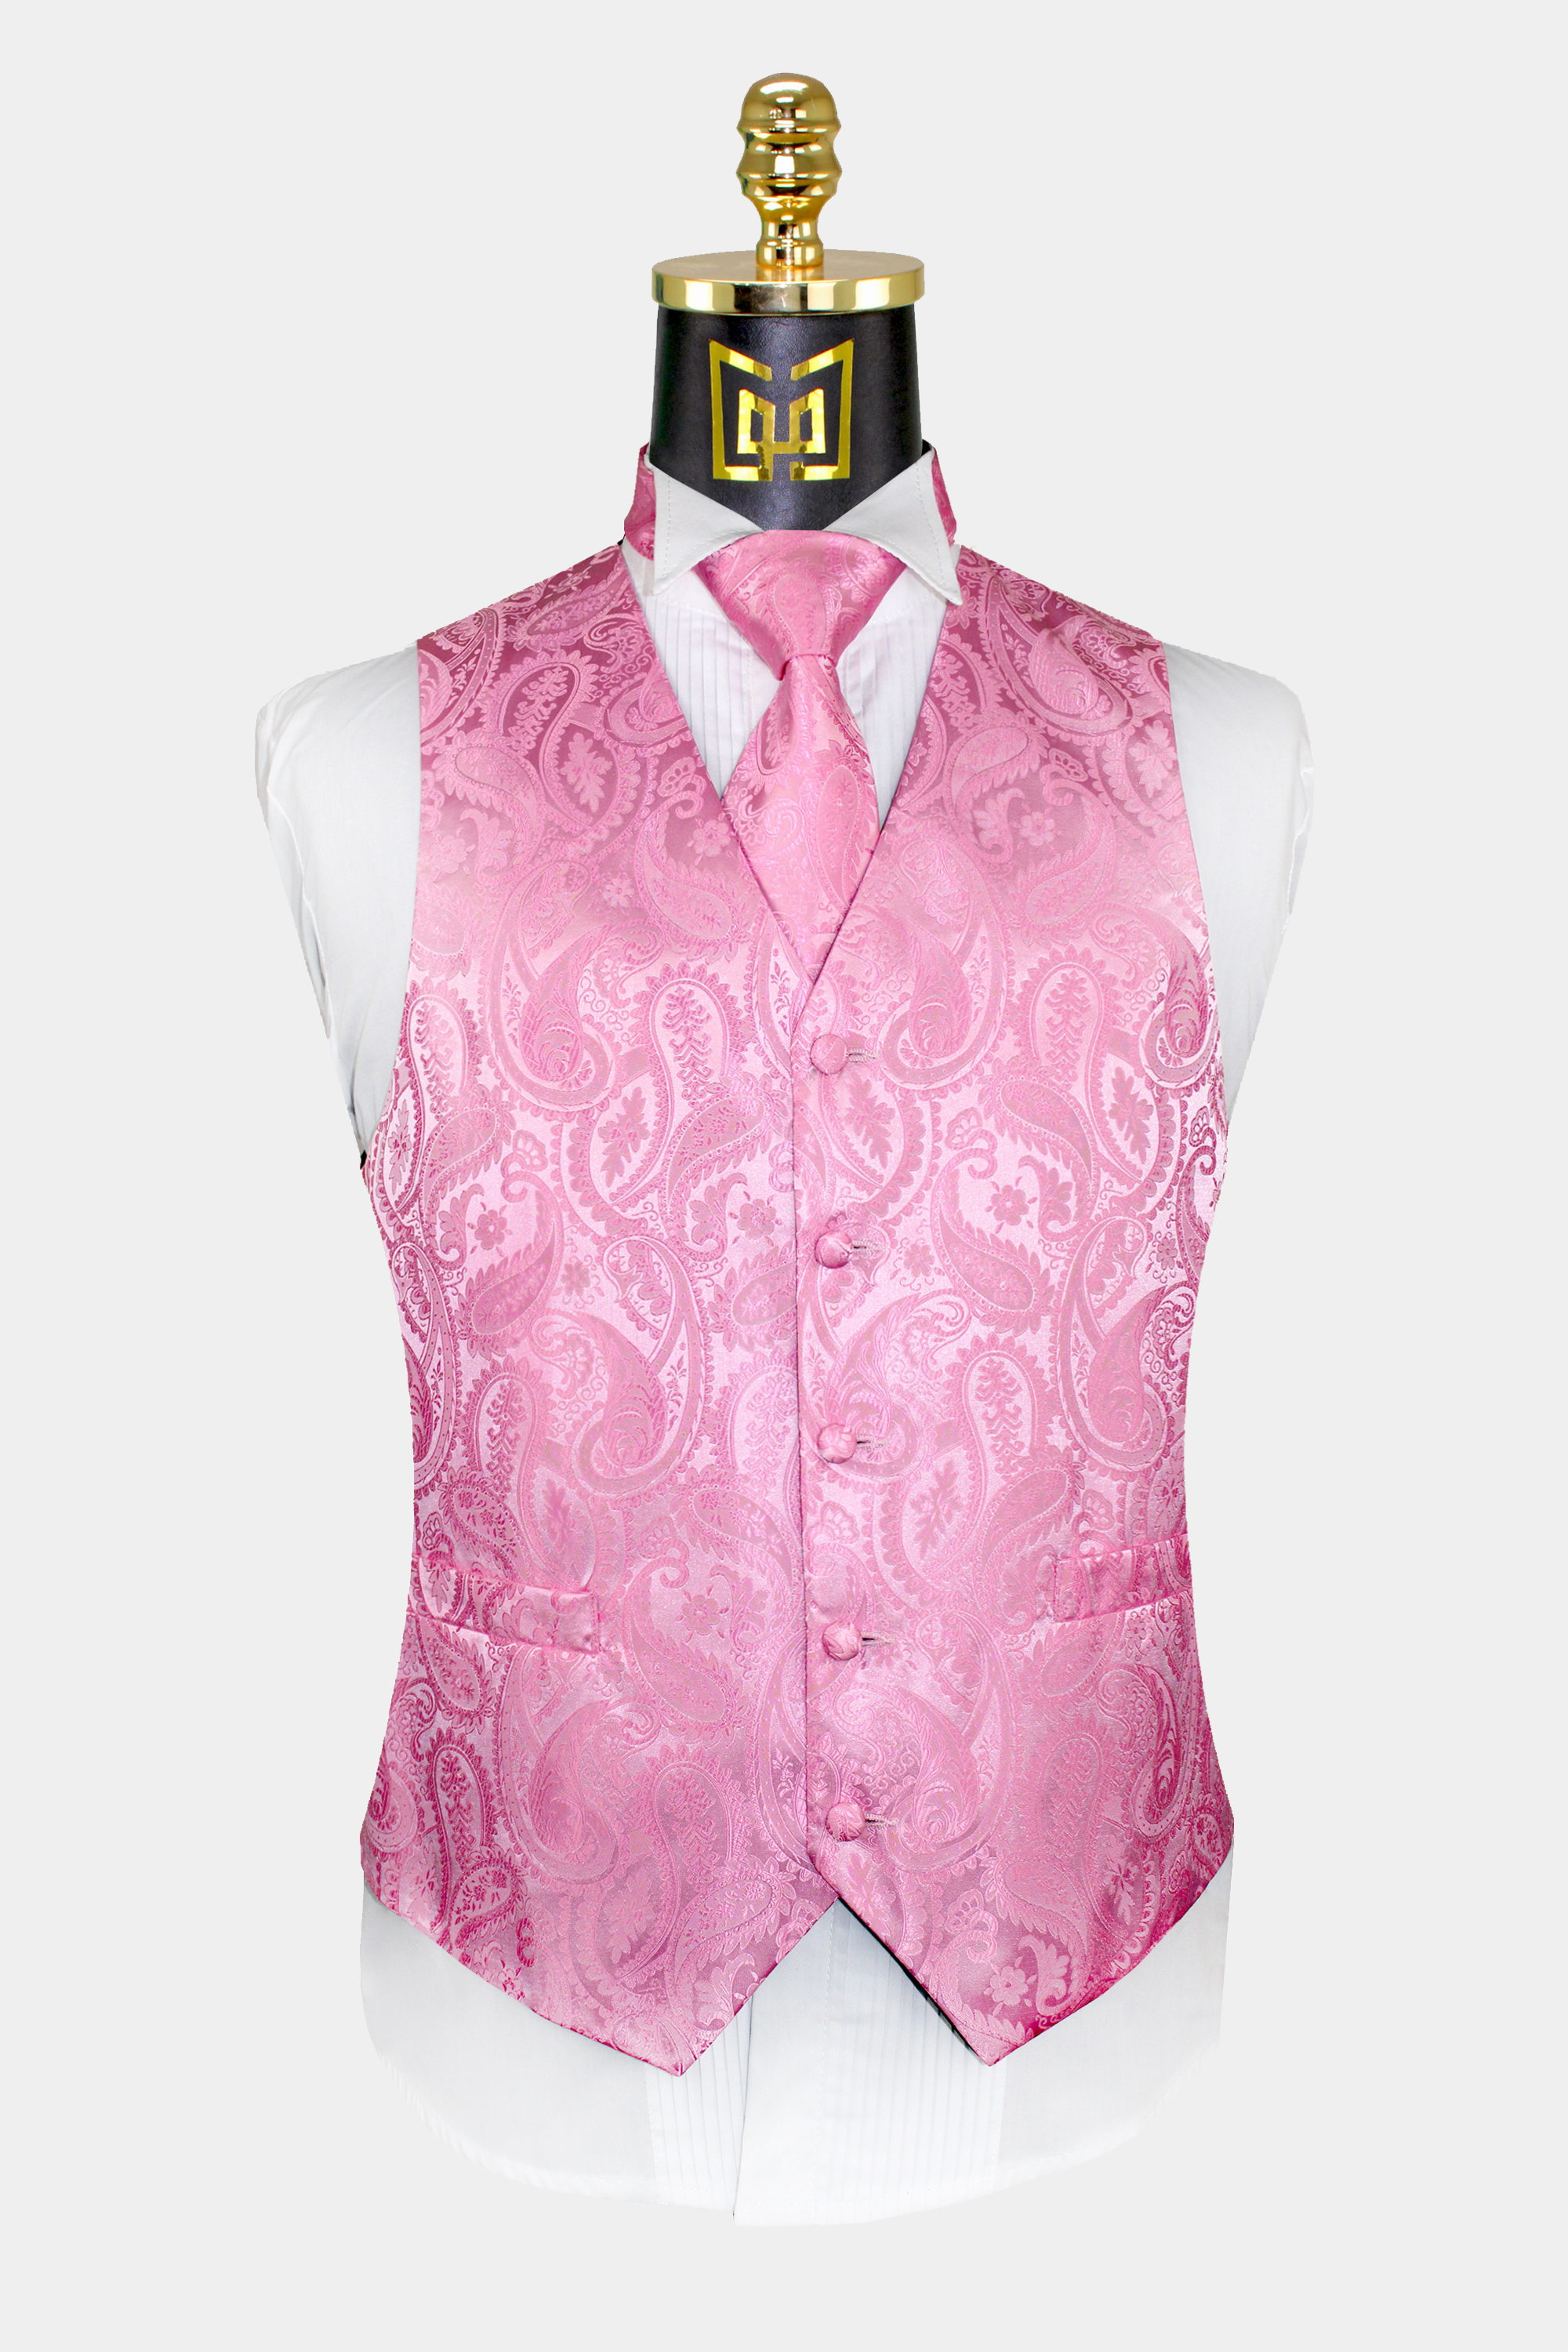 New Men's Formal Vest Tuxedo Waistcoat_necktie set paisley pink wedding prom 